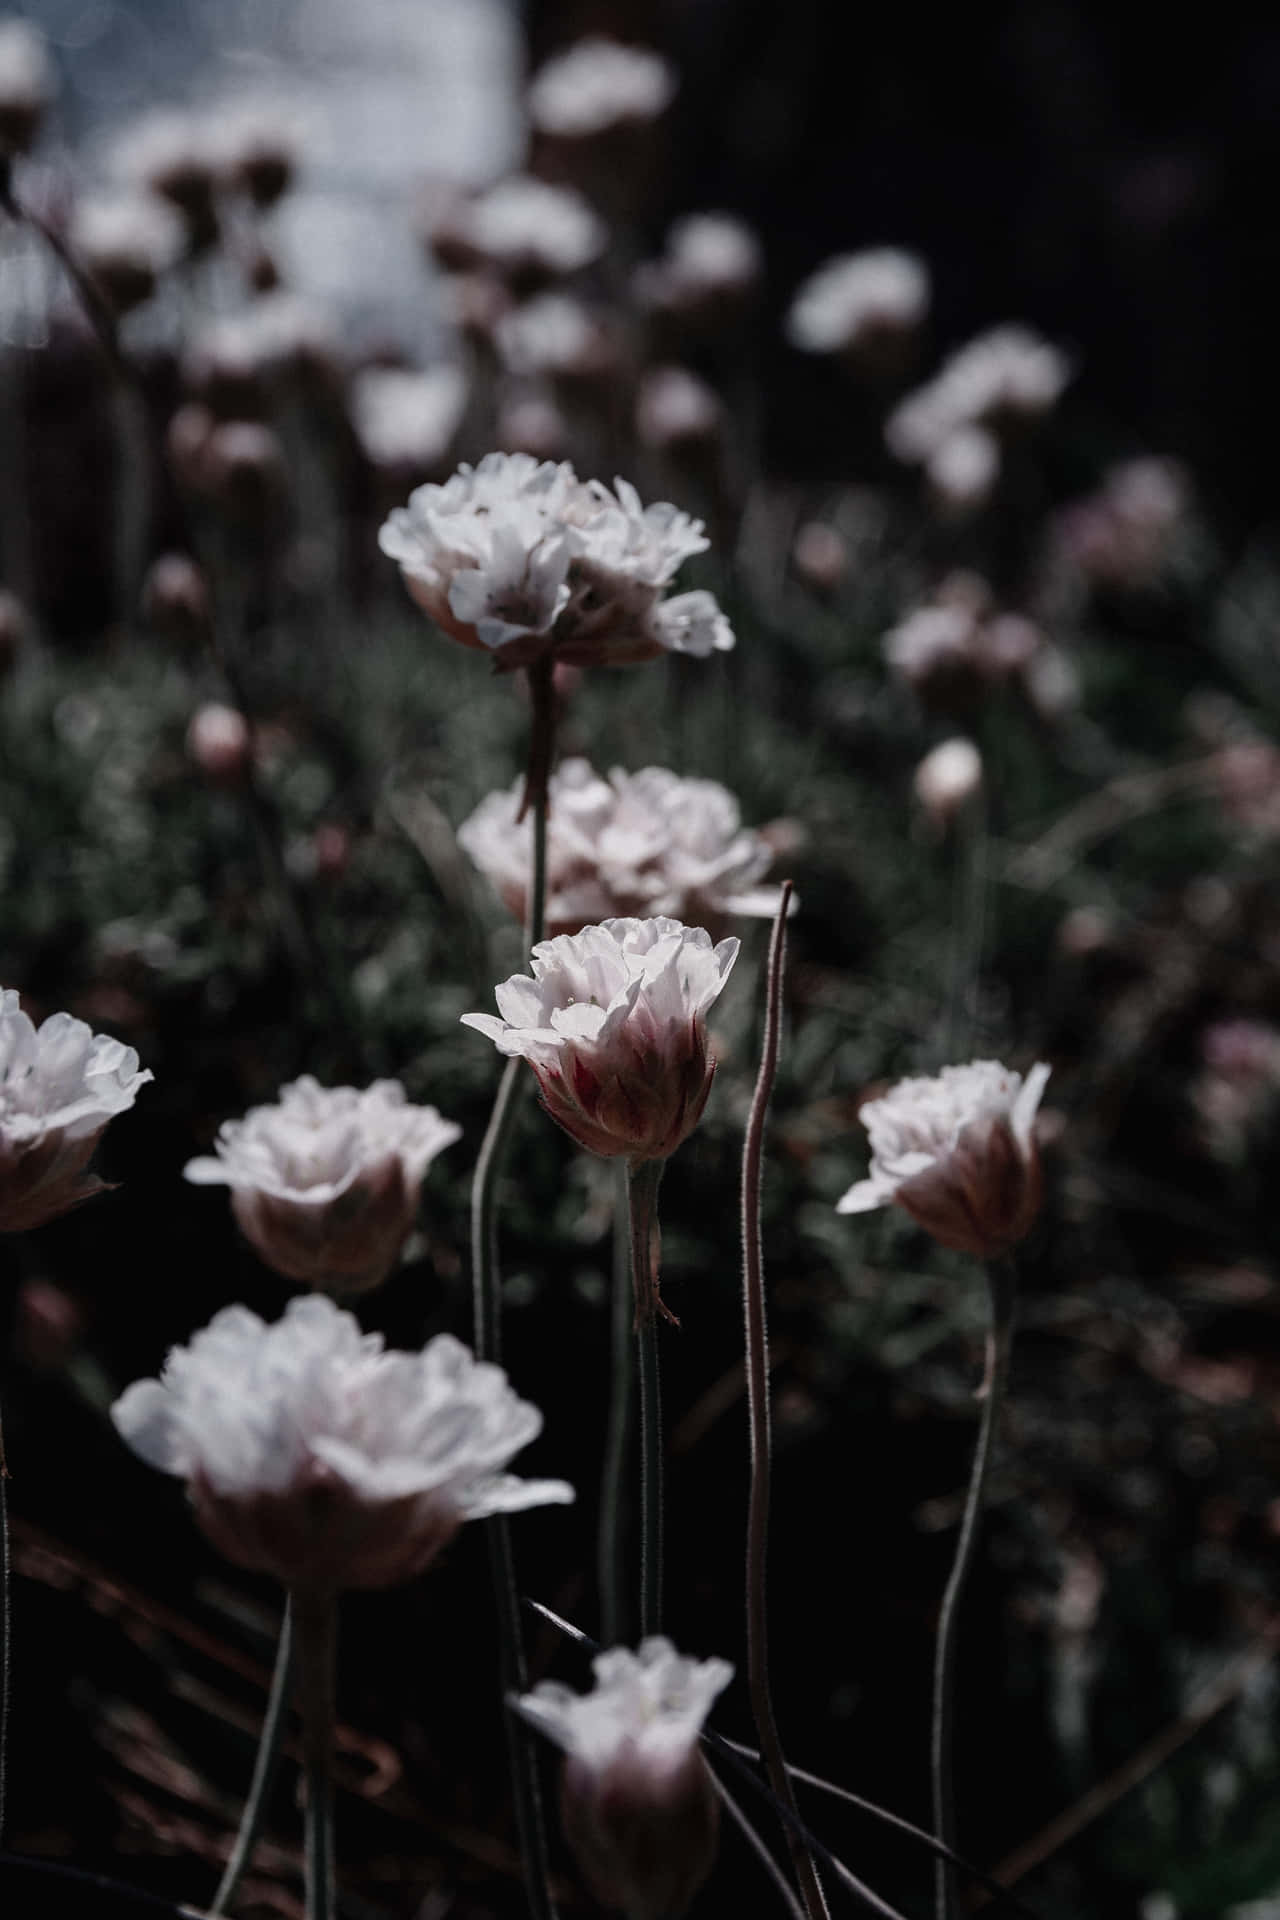 Dark Floral Pictures  Download Free Images on Unsplash